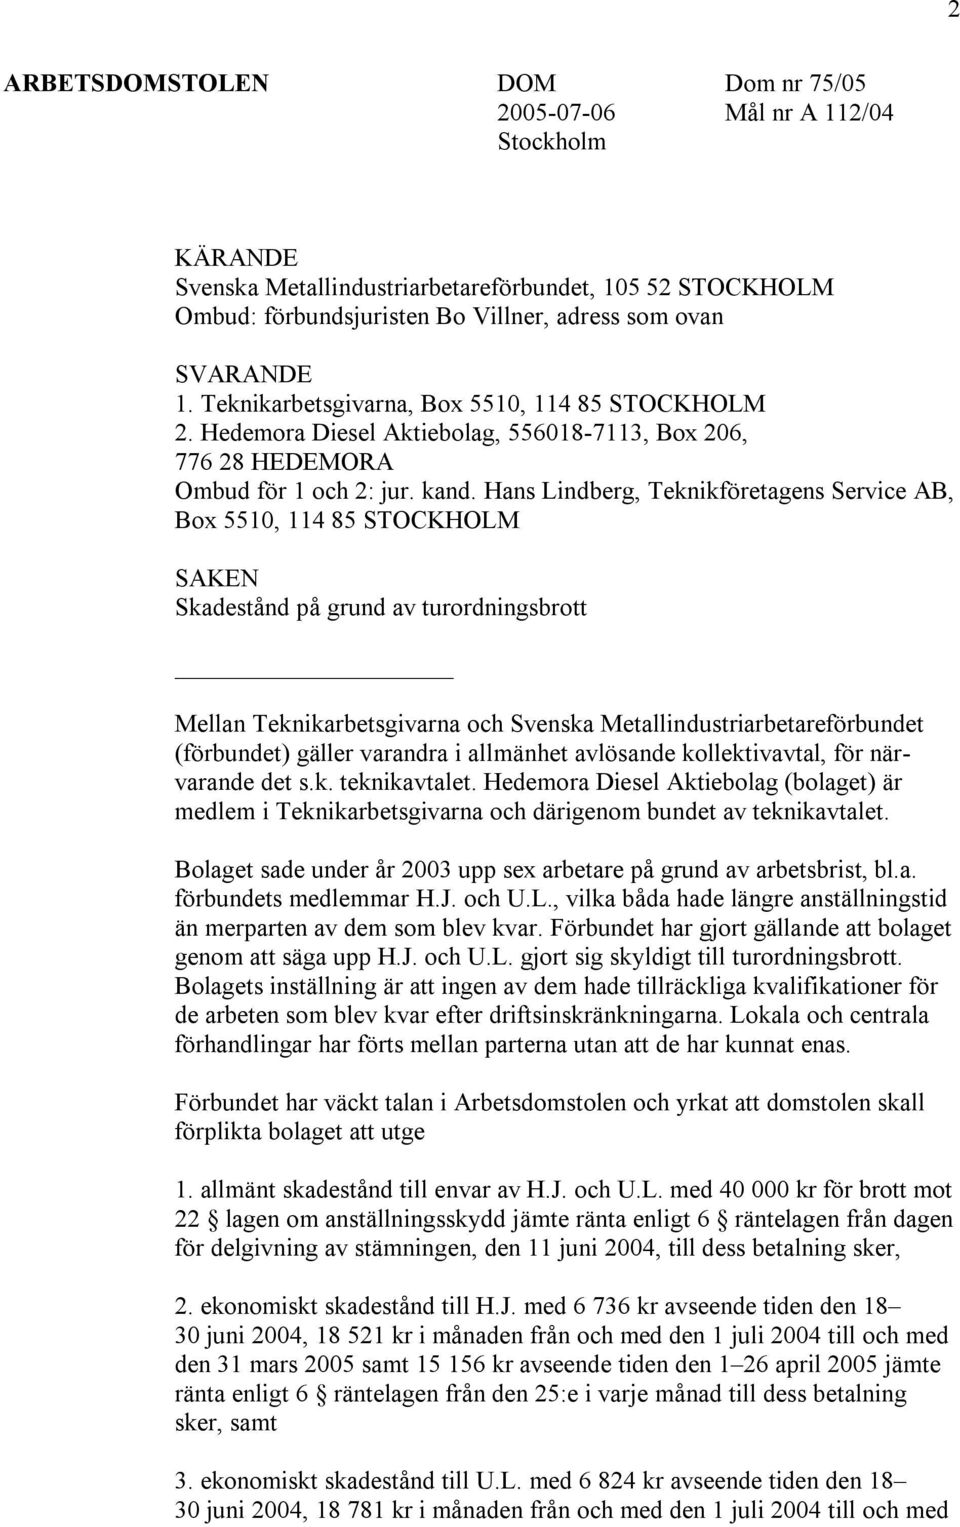 Hans Lindberg, Teknikföretagens Service AB, Box 5510, 114 85 STOCKHOLM SAKEN Skadestånd på grund av turordningsbrott Mellan Teknikarbetsgivarna och Svenska Metallindustriarbetareförbundet (förbundet)